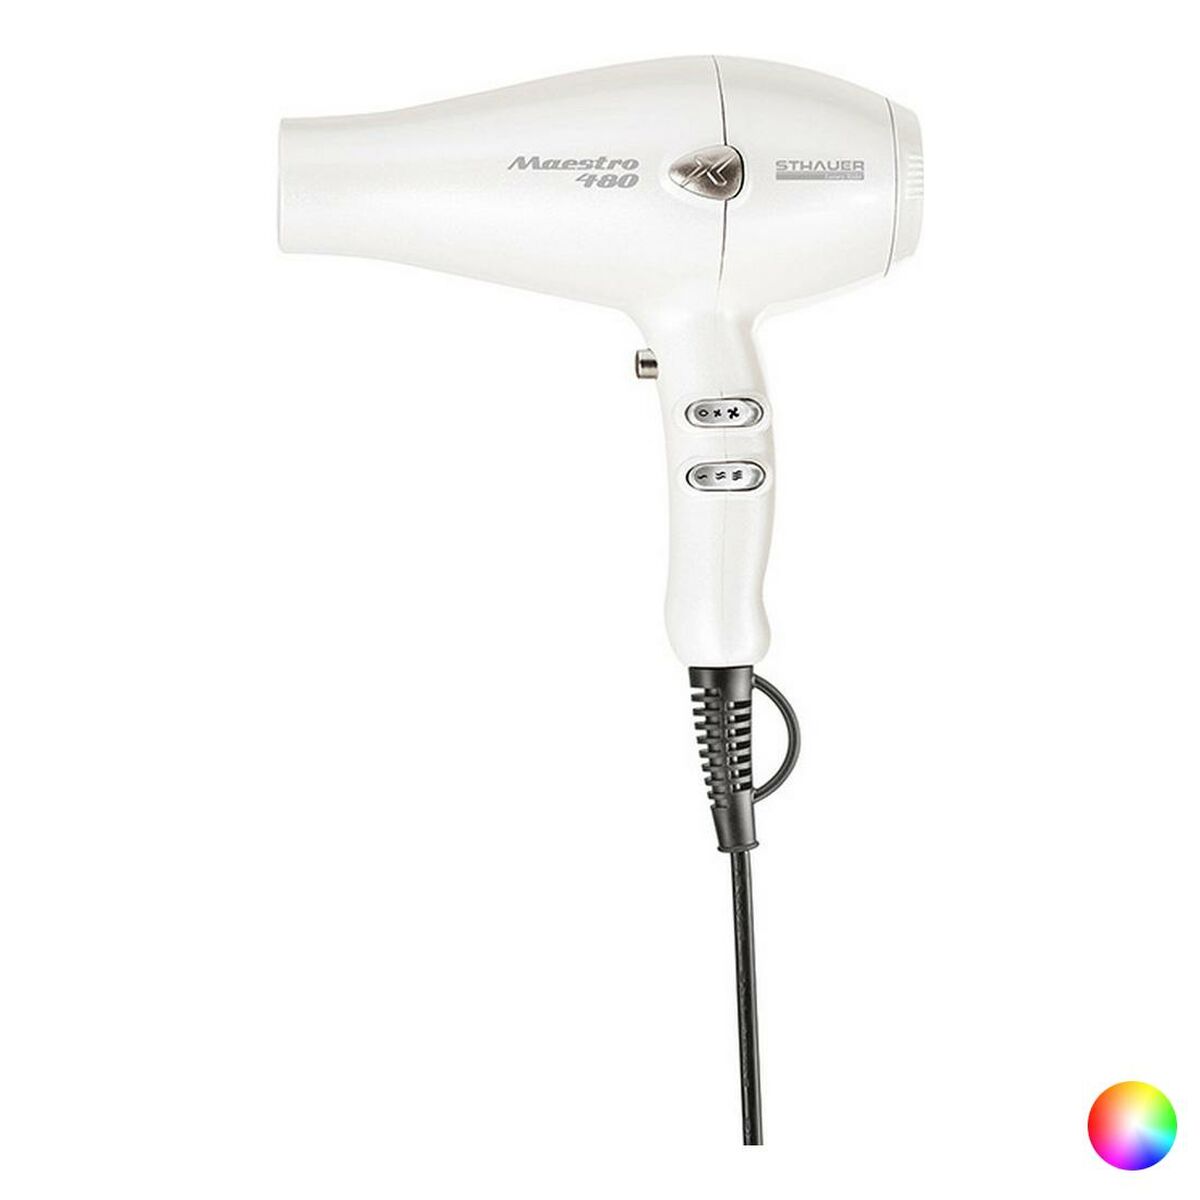 Osta tuote Hiustenkuivaaja Maestro 480 Sthauer (Väri: Valkoinen) verkkokaupastamme Korhone: Terveys & Kauneus 10% alennuksella koodilla KORHONE